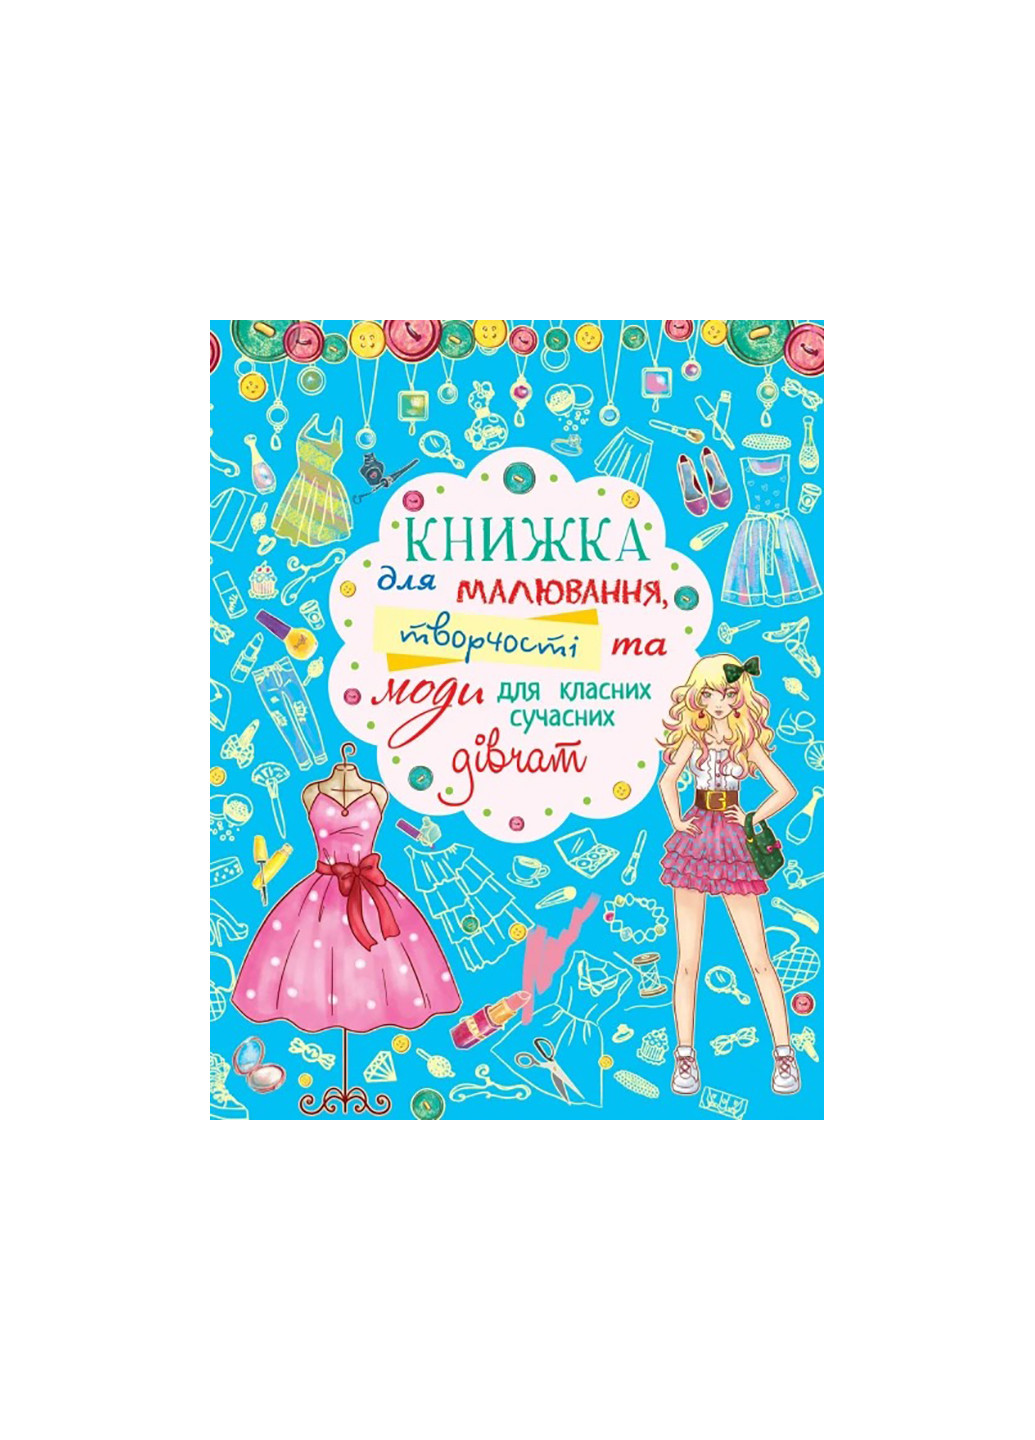 Книга Книга для рисования, творчества и моды для классных современных девушек 2483 Crystal Book (259861922)